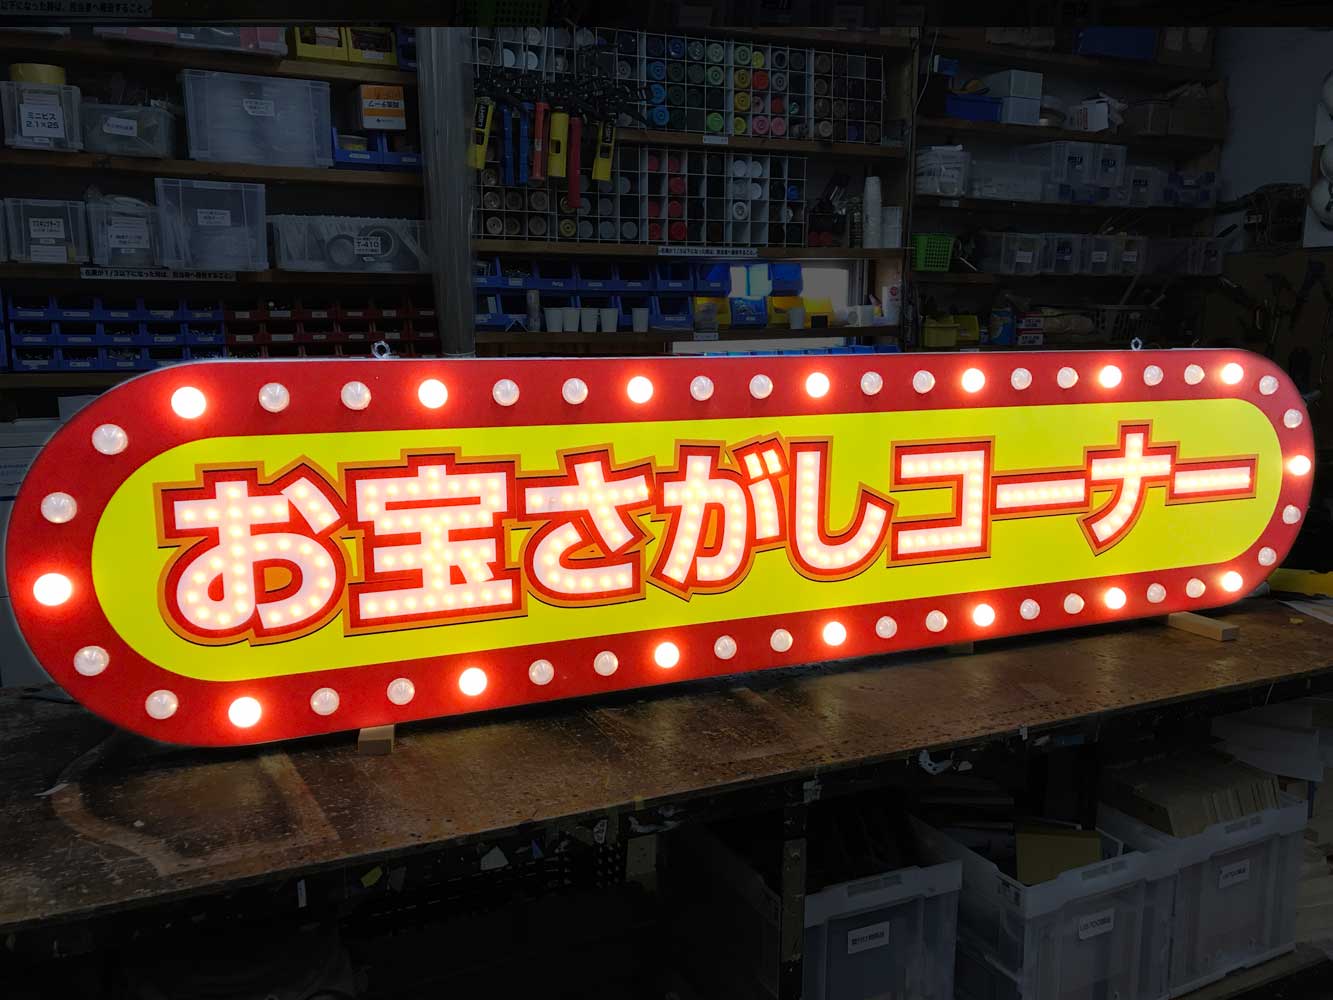 【オーダーメイド看板】看板屋さんの商品コーナー用LED看板製作事例をご紹介します。